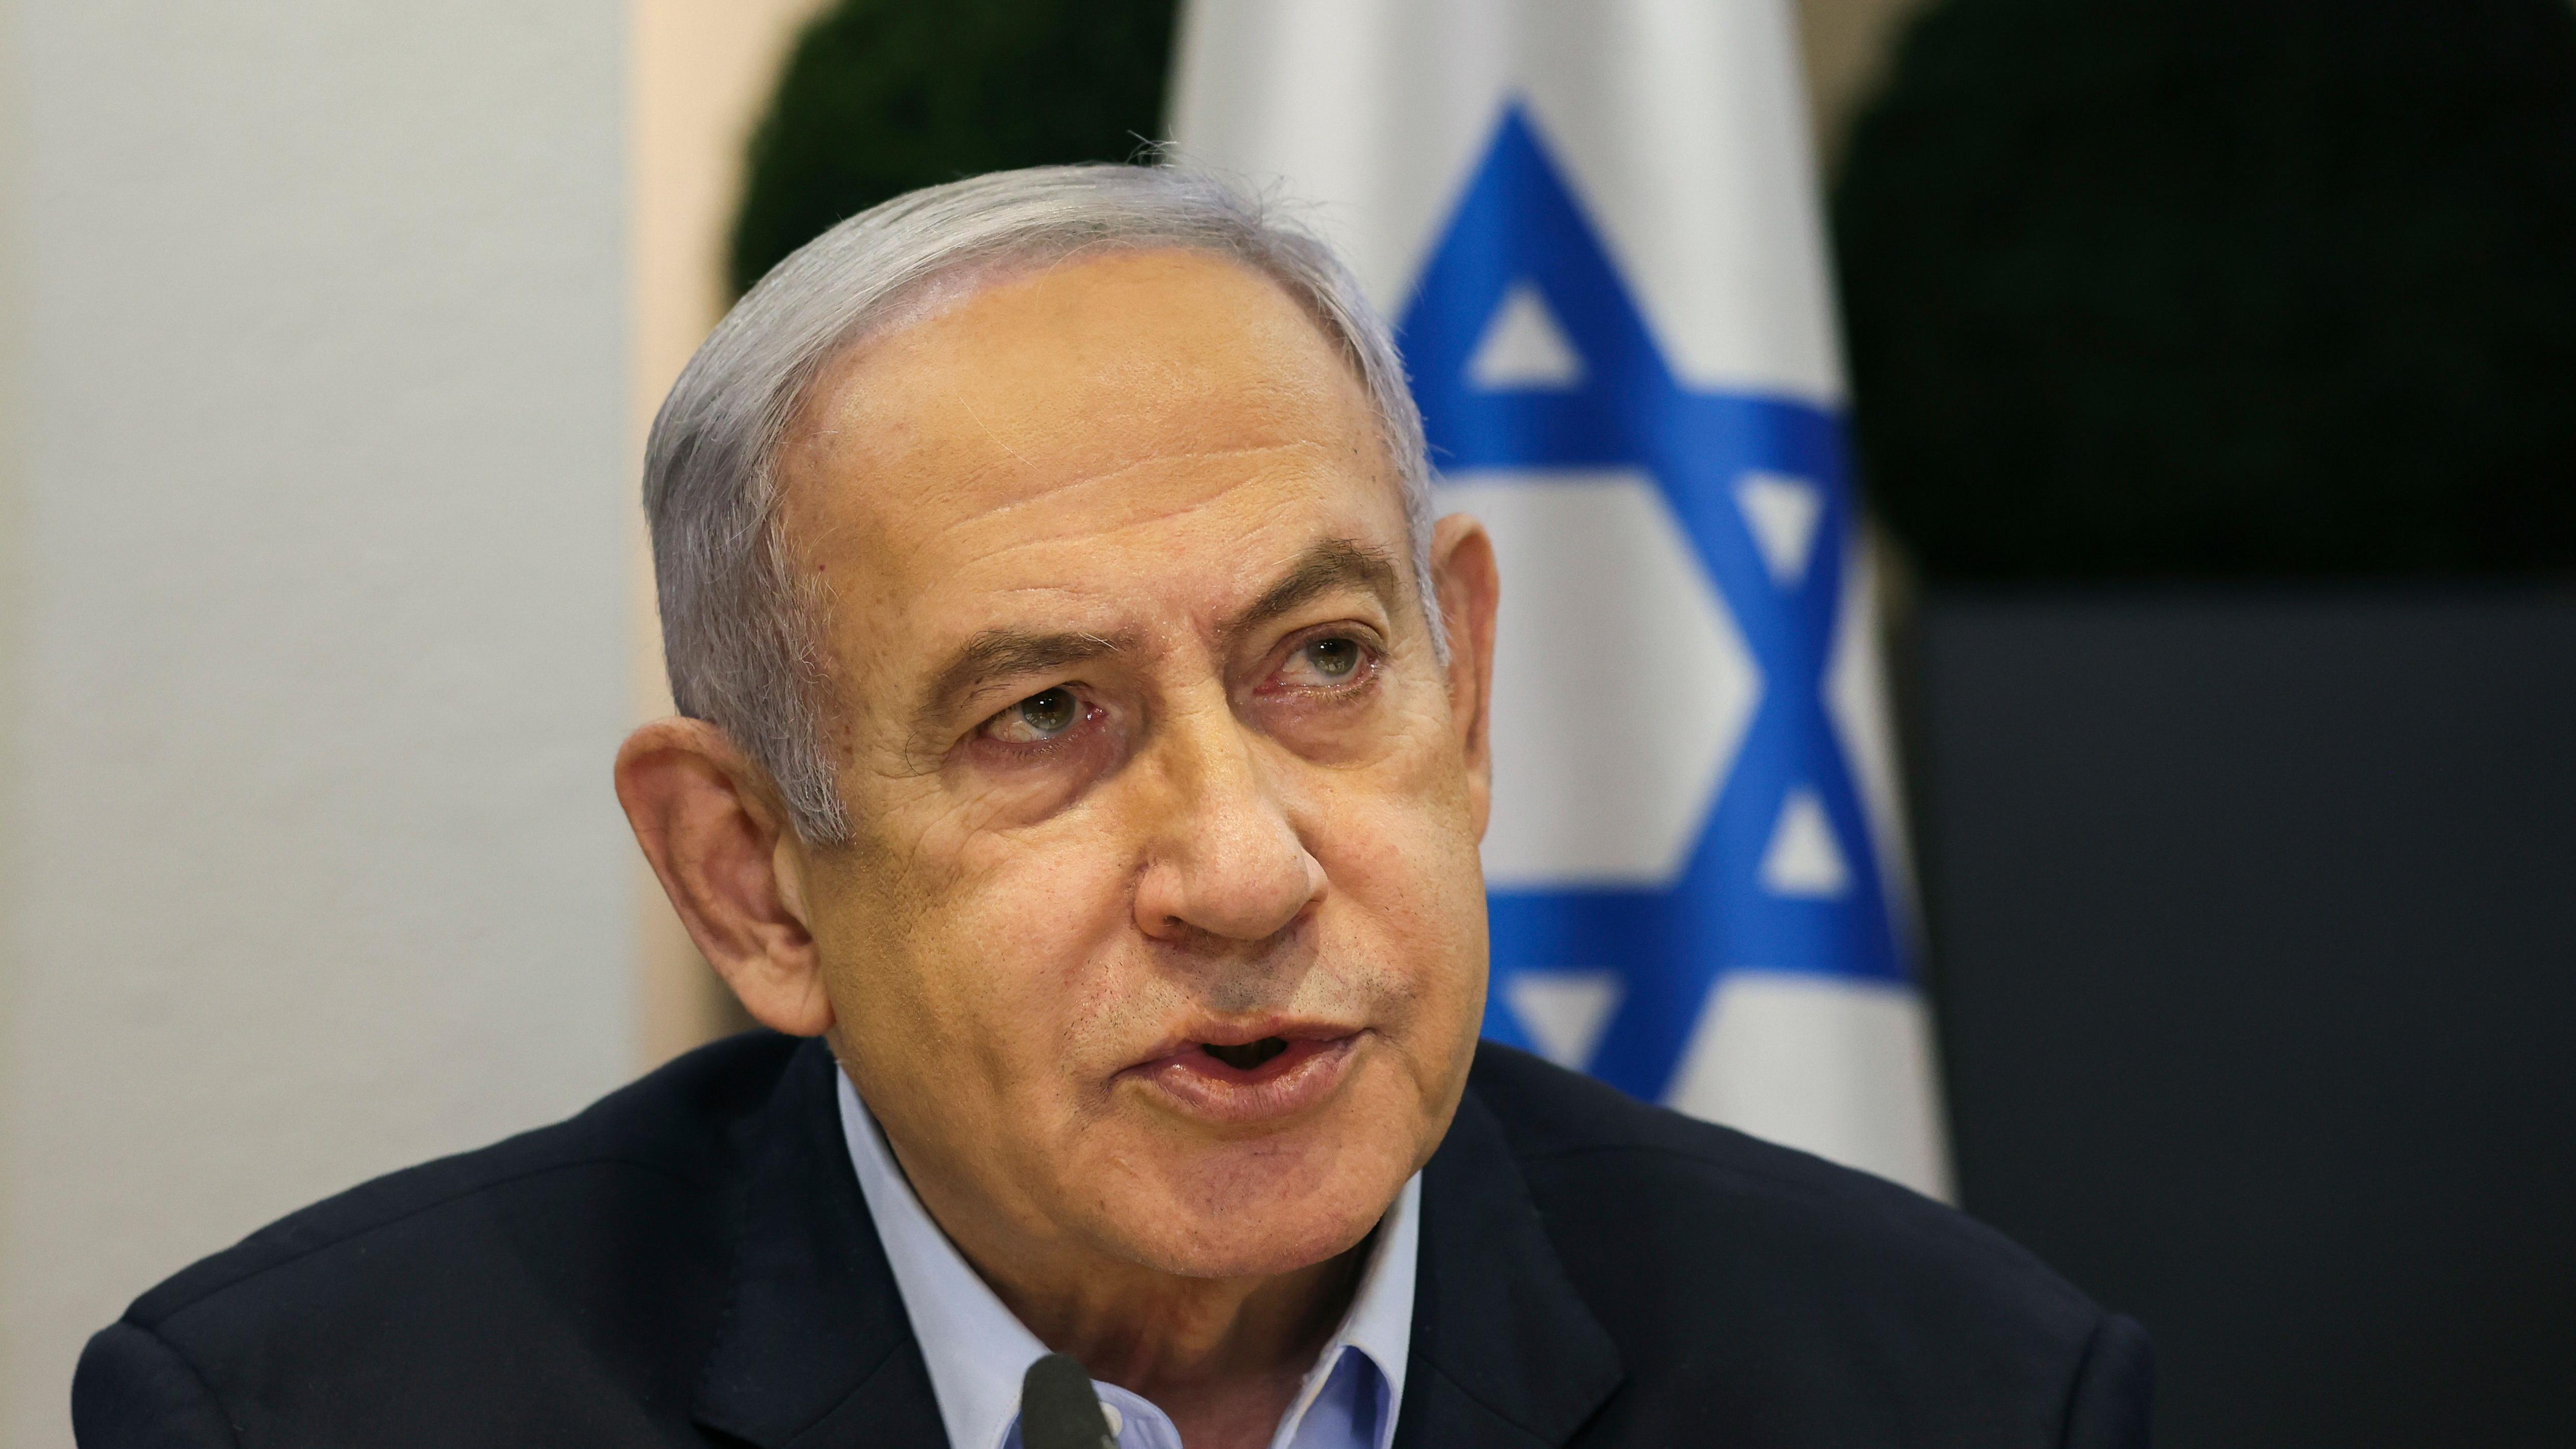 نتنياهو يريد بقاء حماس في السلطة، "ودوافعه الخفية كُشفت" - جيروزاليم بوست